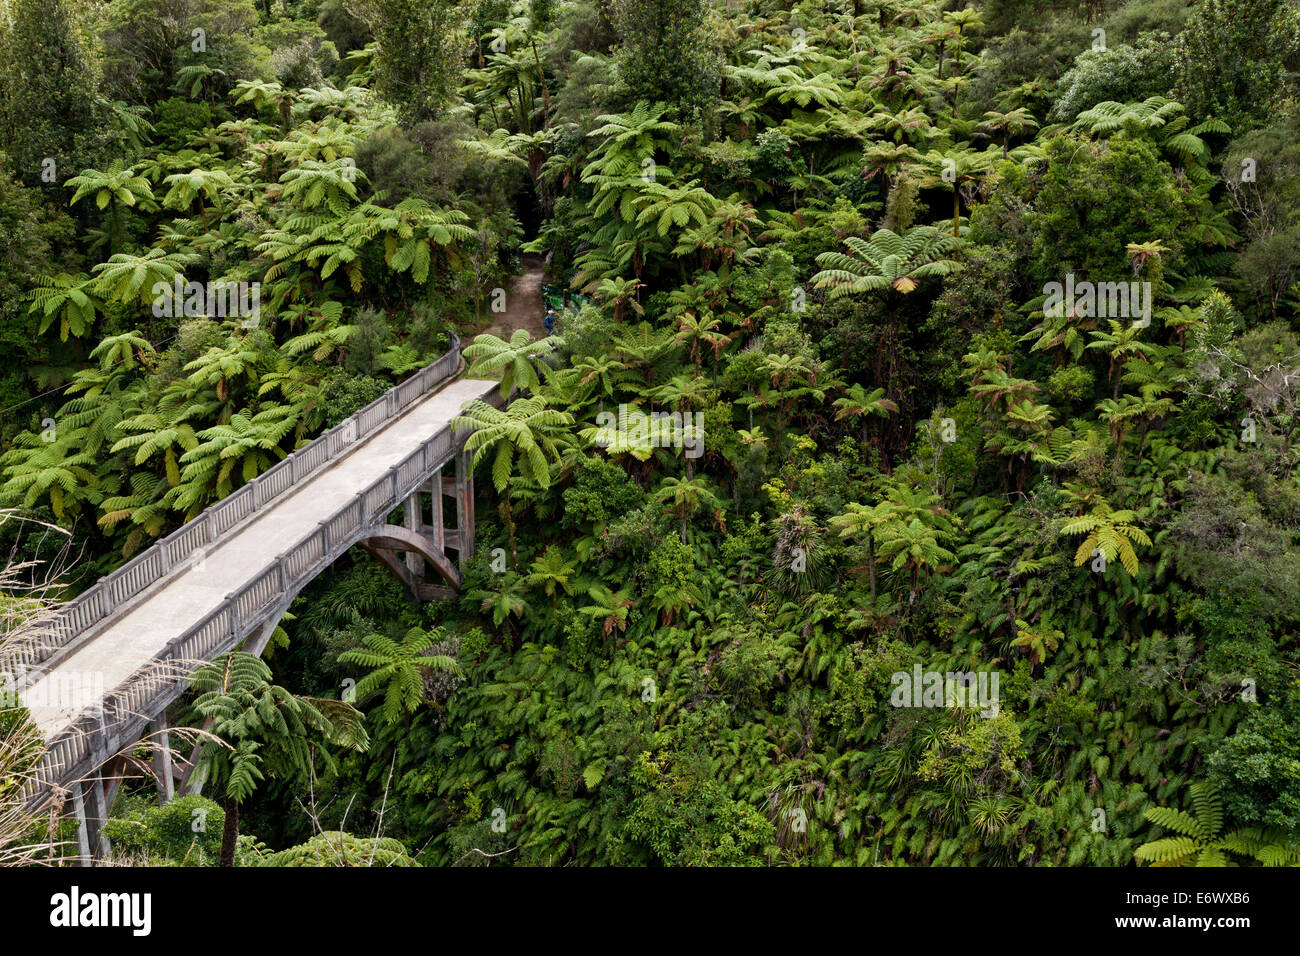 Les fougères arborescentes, Pont vers nulle part, une piste de marche, la rivière Whanganui, île du Nord, Nouvelle-Zélande Banque D'Images